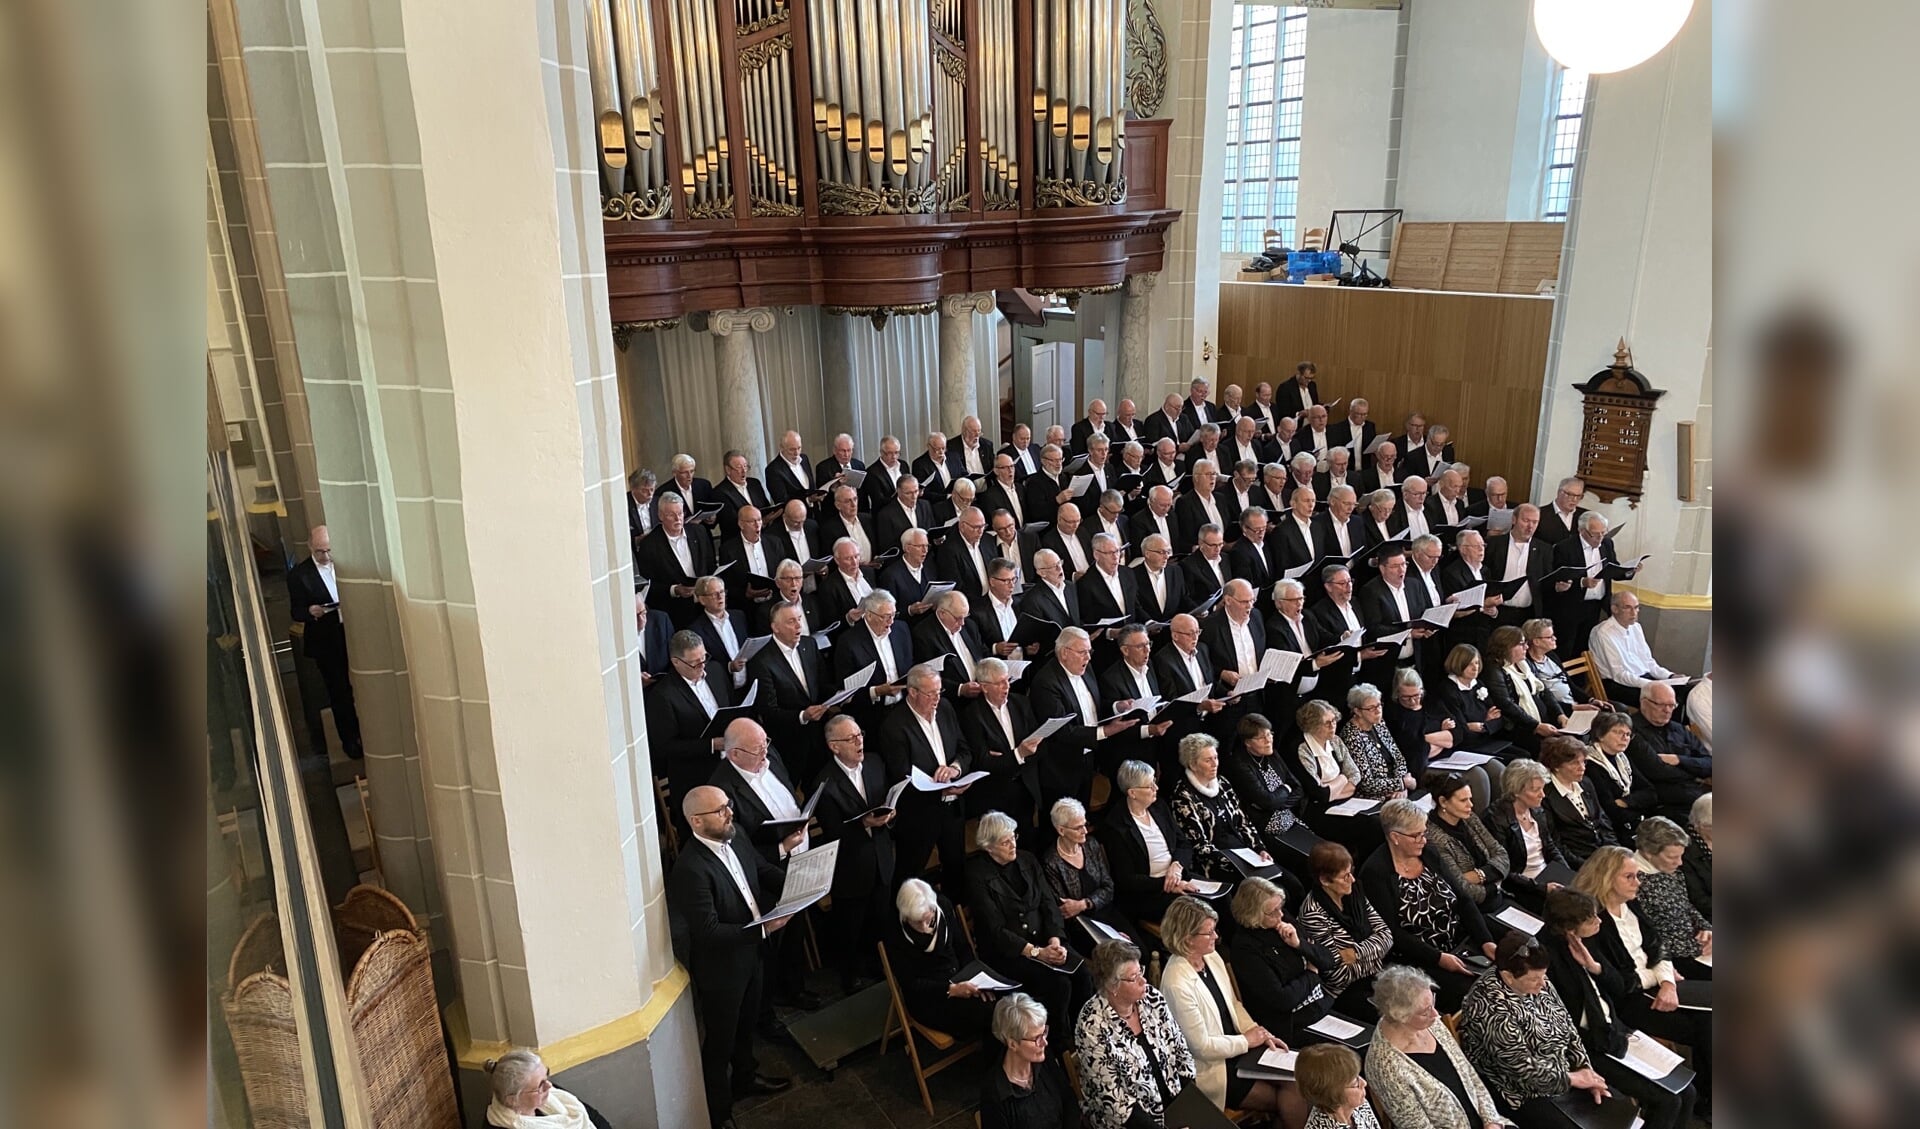 Groot Mannenkoor Noord-Nederland en Noord-Nederlands Gemengd koor